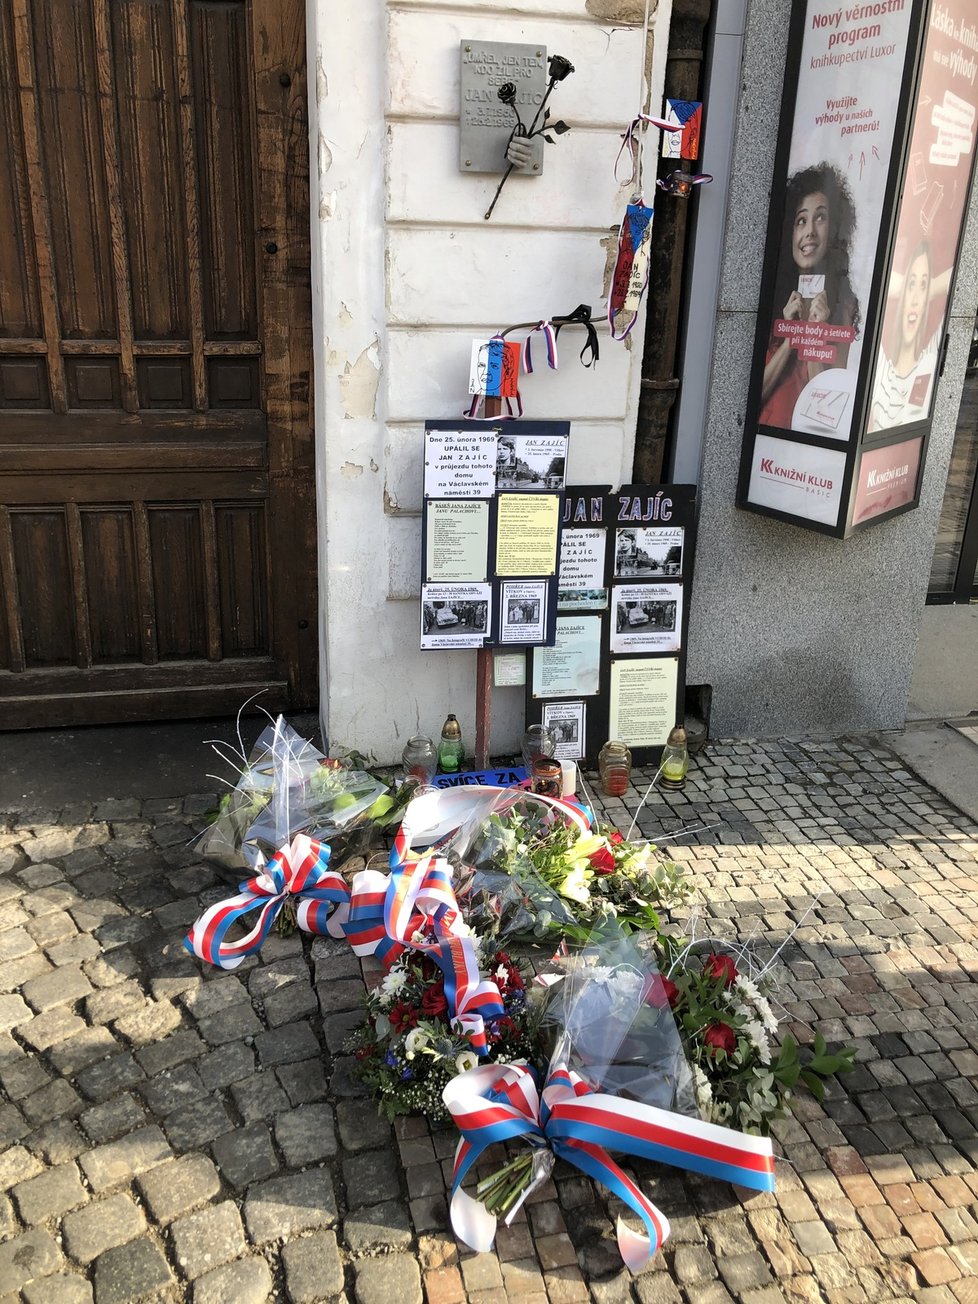 Komorní vzpomínková akce k upálení Jana Zajíce proběhla na Václavském náměstí, u domu č. 39, kde se Zajíc zapálil